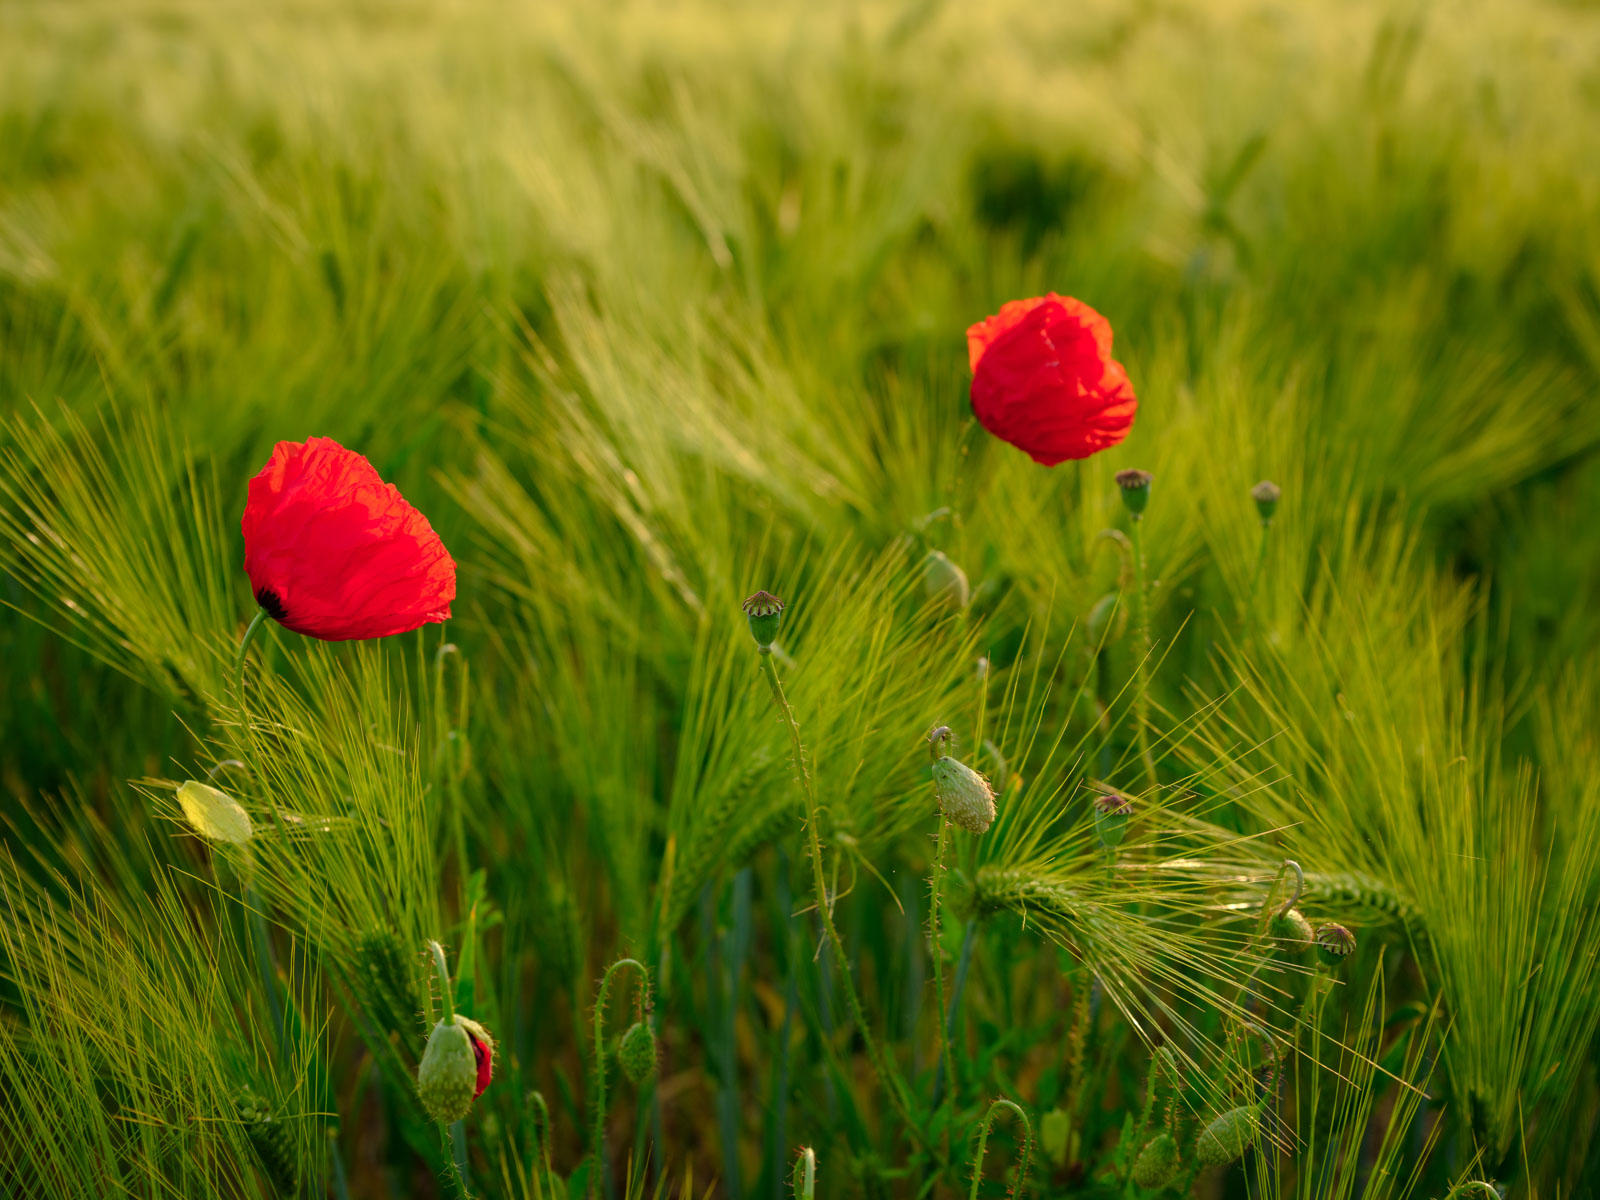 Red poppy in a wheat field in 'Brönninghausen' (Bielefeld, Germany).